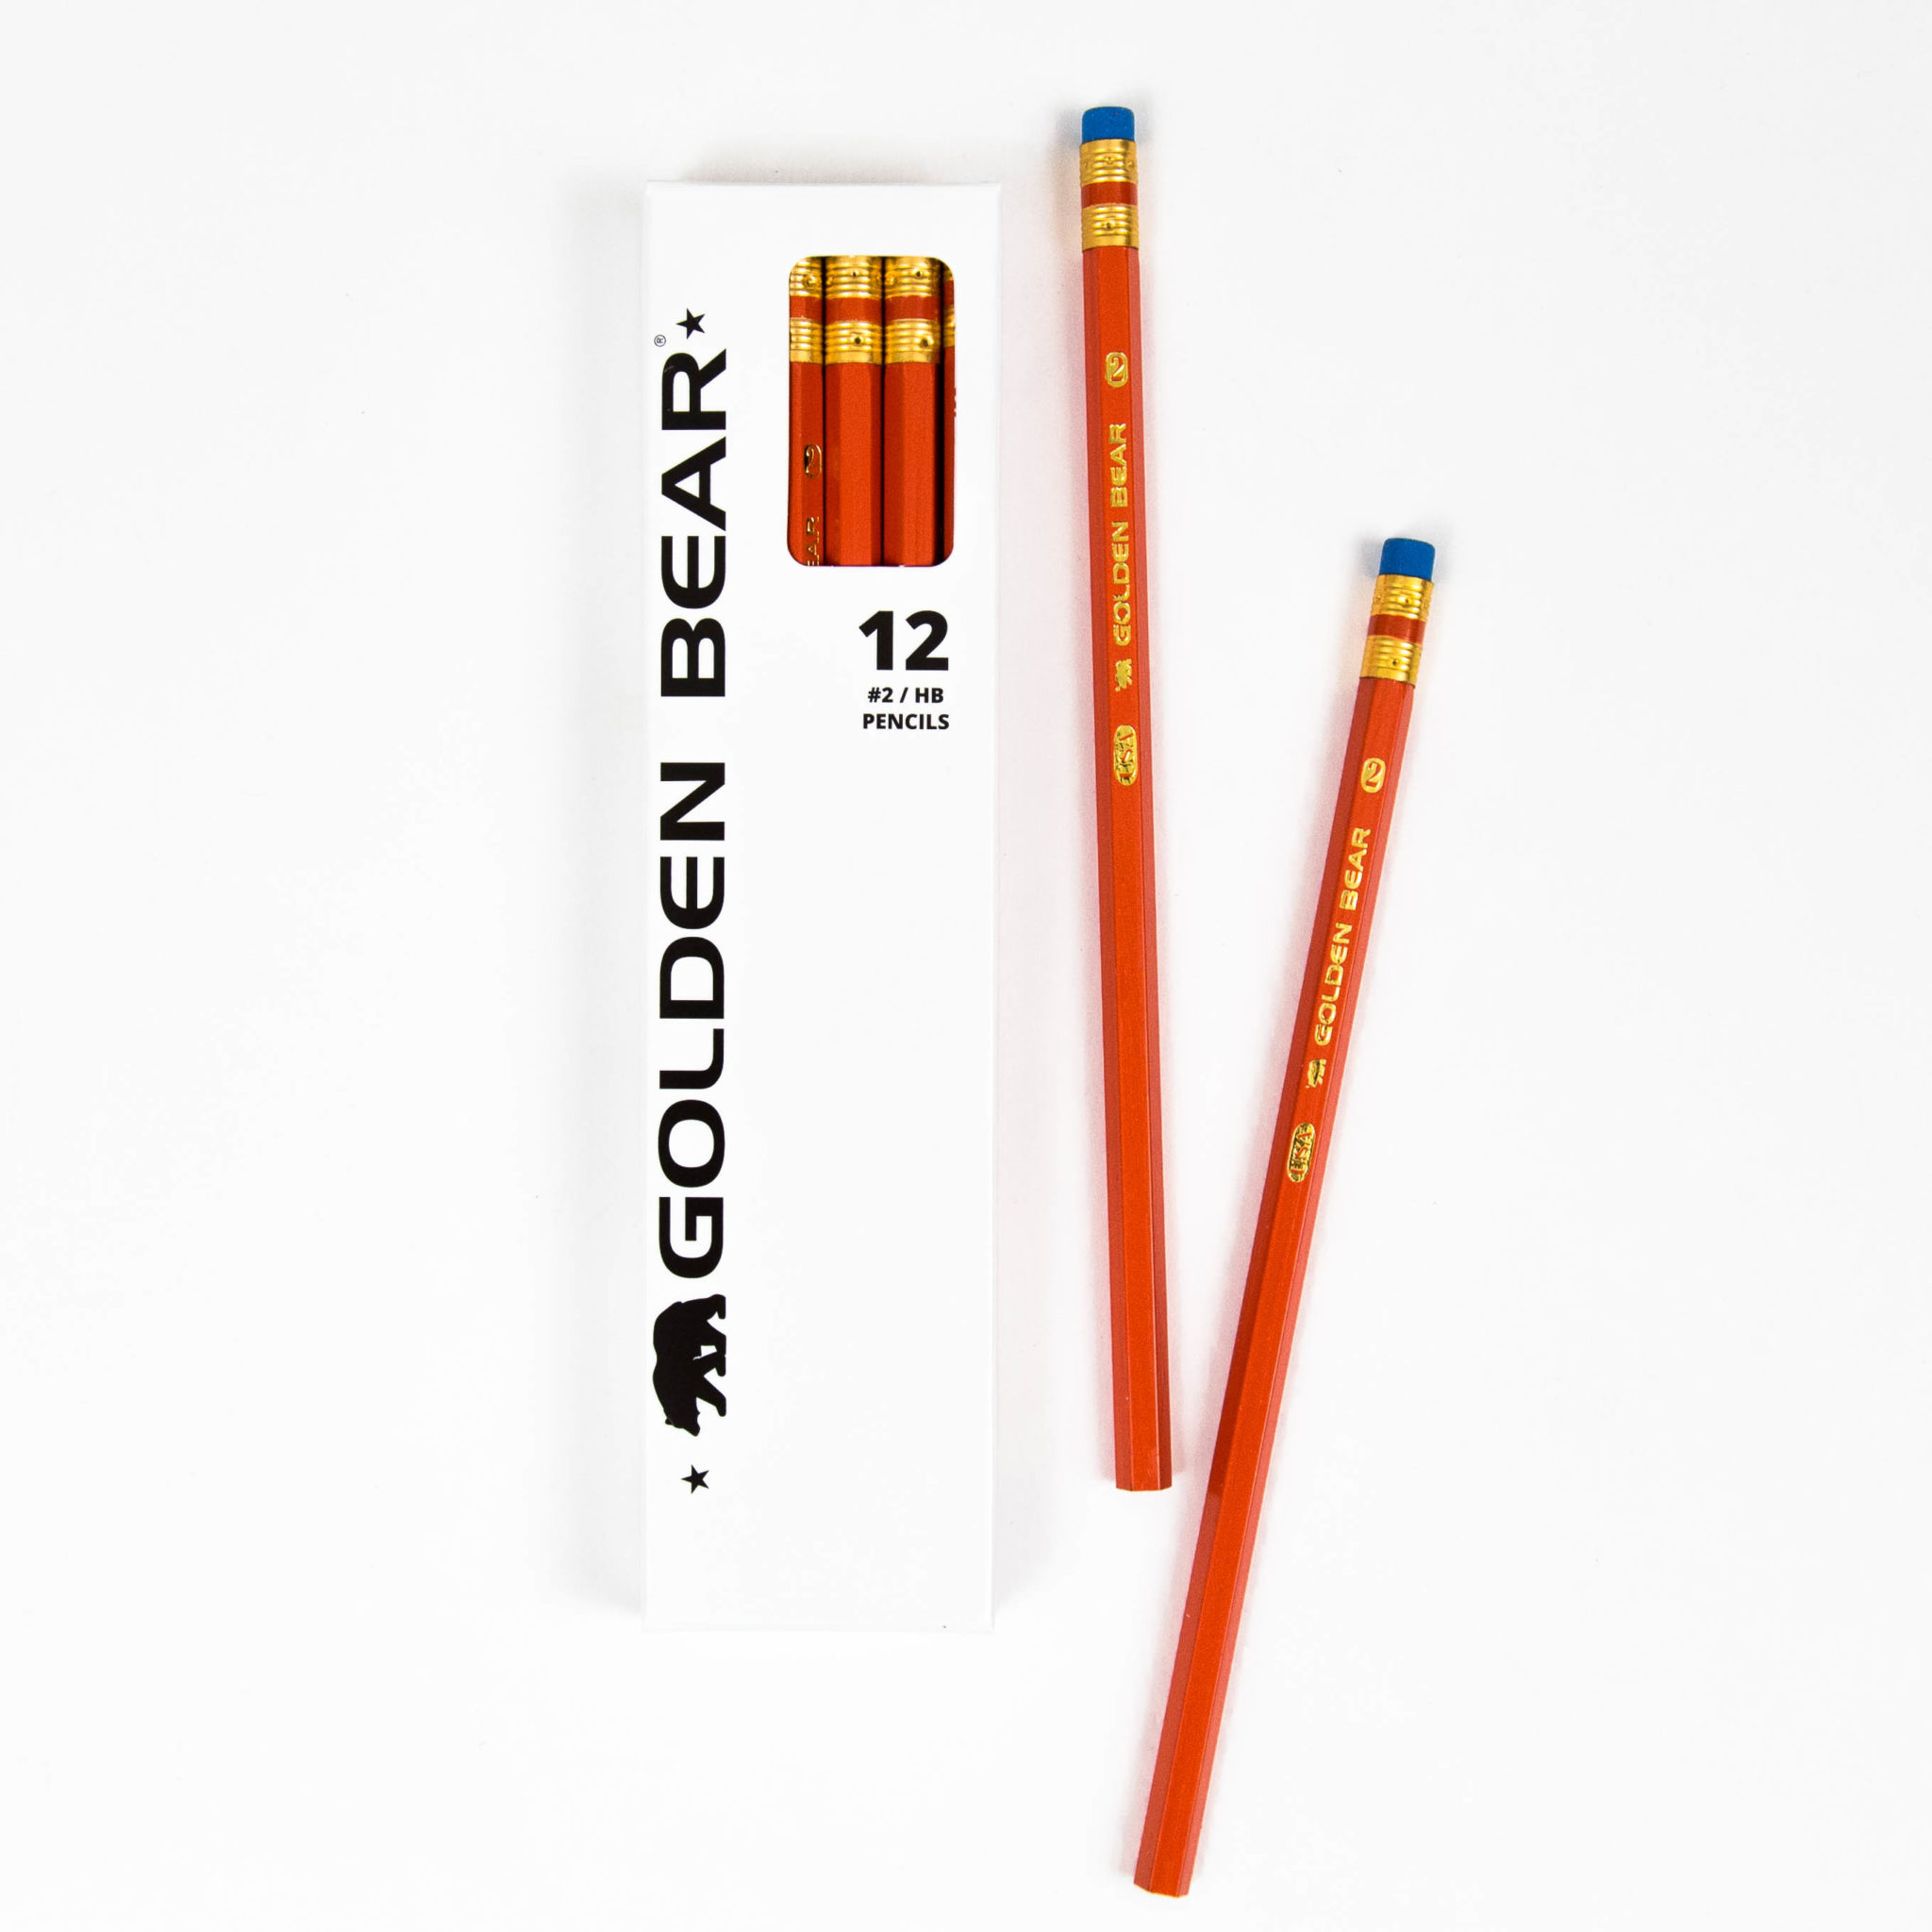 Golden Bear Orange #2 Pencils (12 Pack) - USA Made - Pencils.com